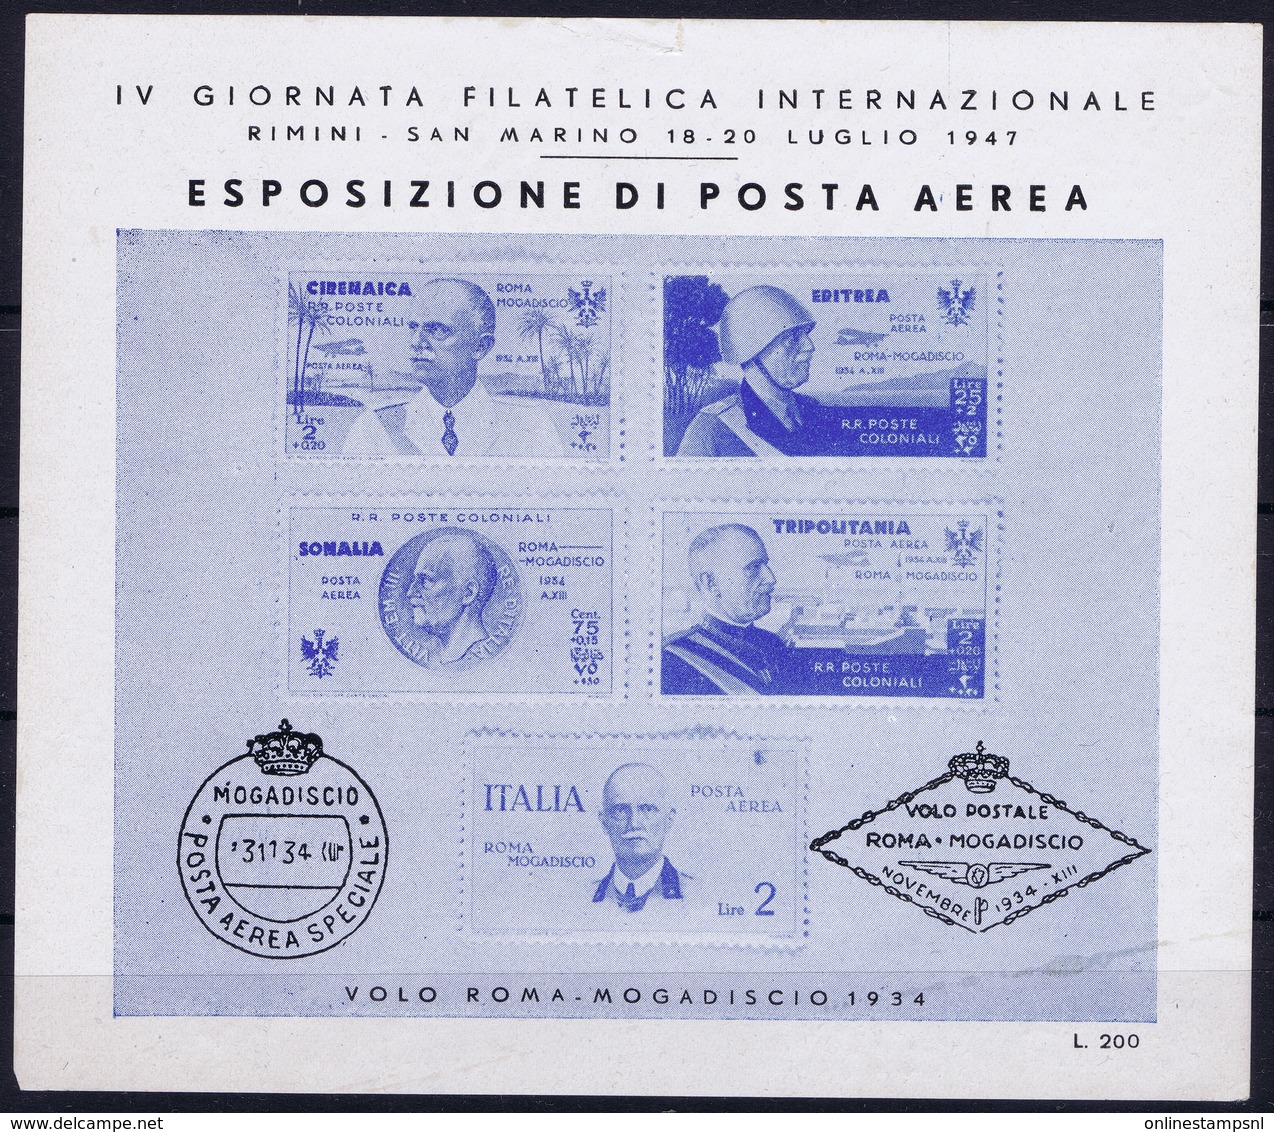 ITALY  ESPOSIZIONE DI POSTA AEREA   IV GIORNATA FILATELICA  VOLO ROMA - MOGADISCIO 1934   RIMINI S. MARINO 1947 - Luftpost